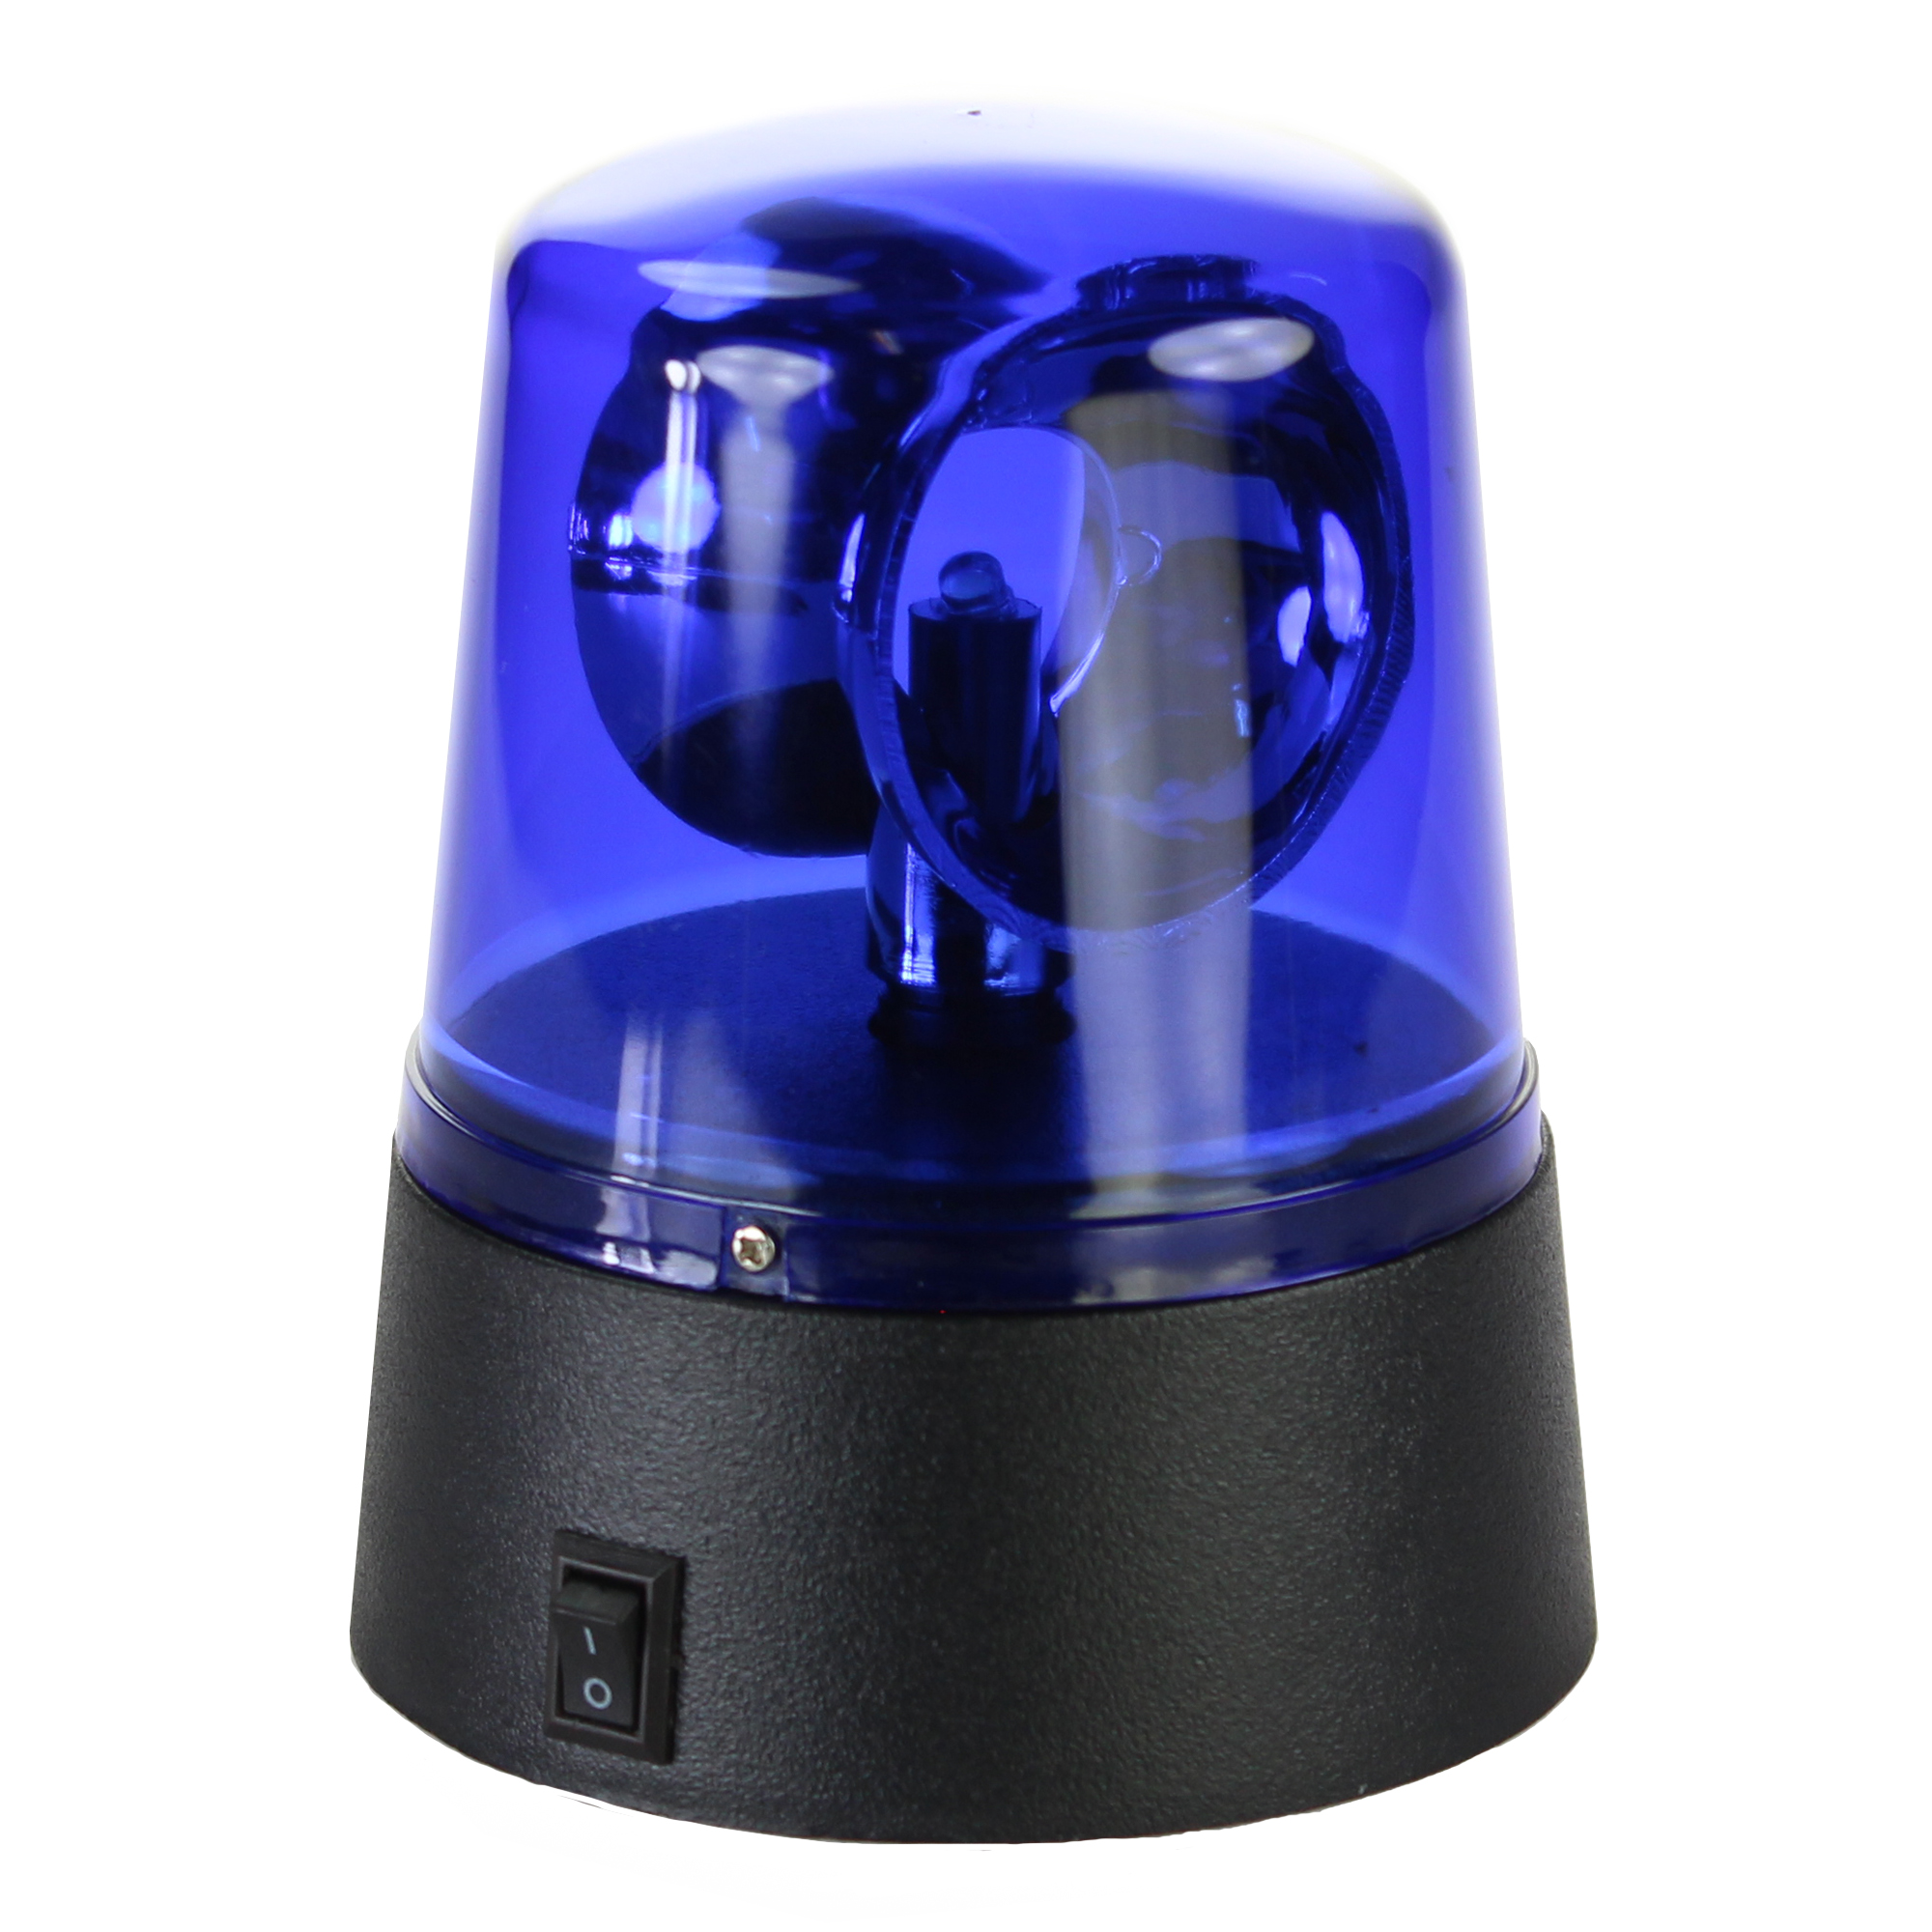 Discobeleuchtung - Partylicht mit blauer LED, Blaulicht Lampe Party Beleuchtung, Disco Licht als Partyzubehör, Polizeilicht für blaue Spezialeffekte